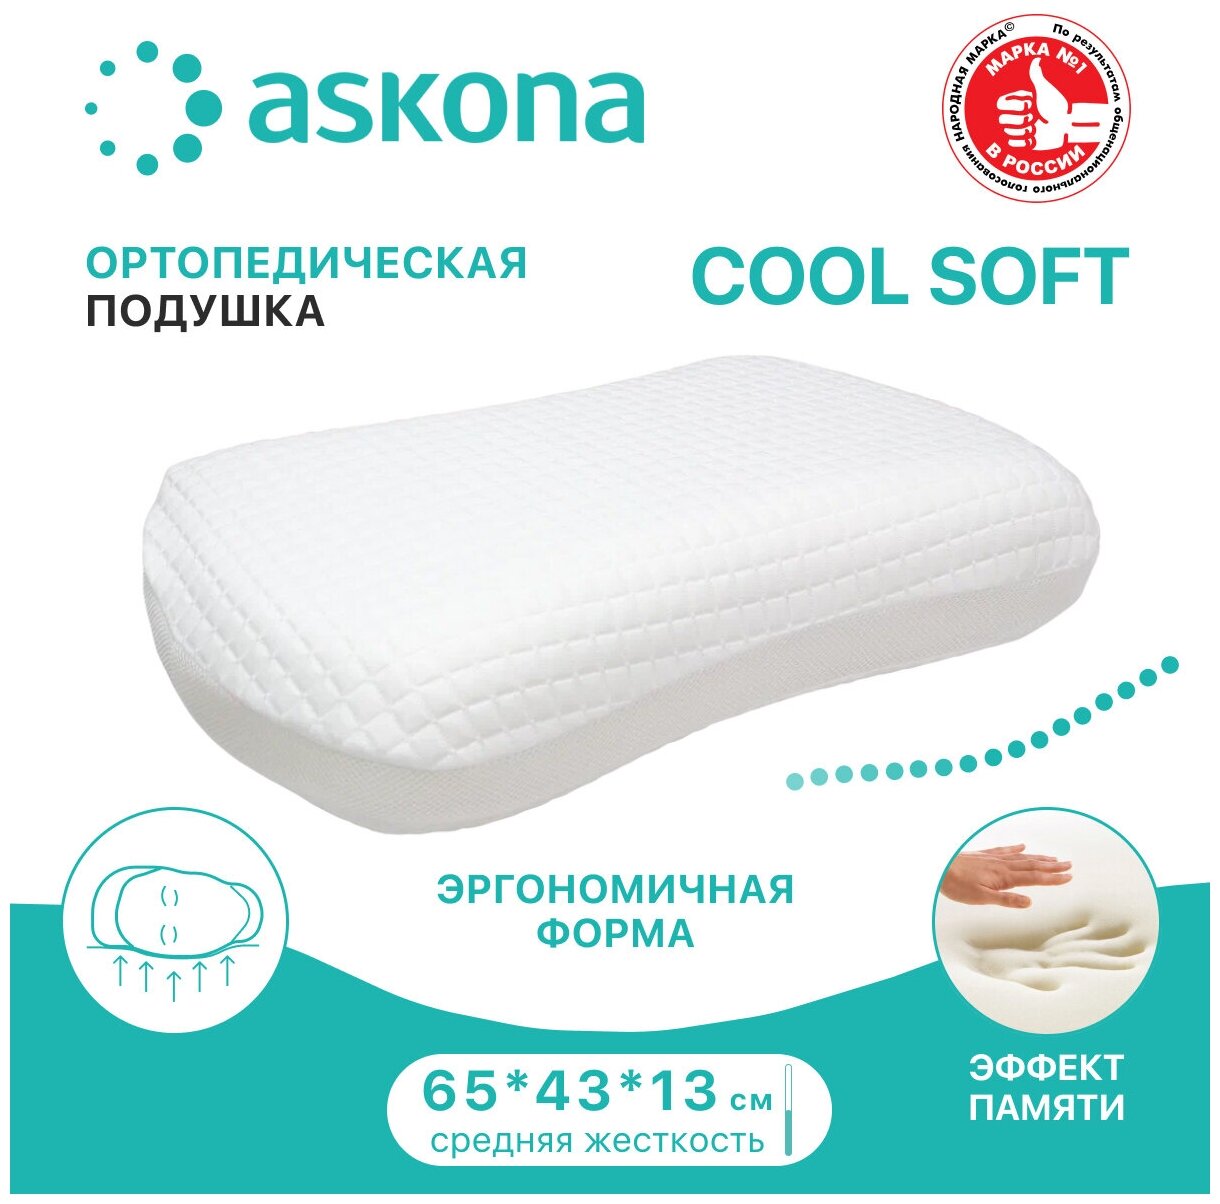 Подушка ортопедическая Askona Cool Soft с эффектом памяти